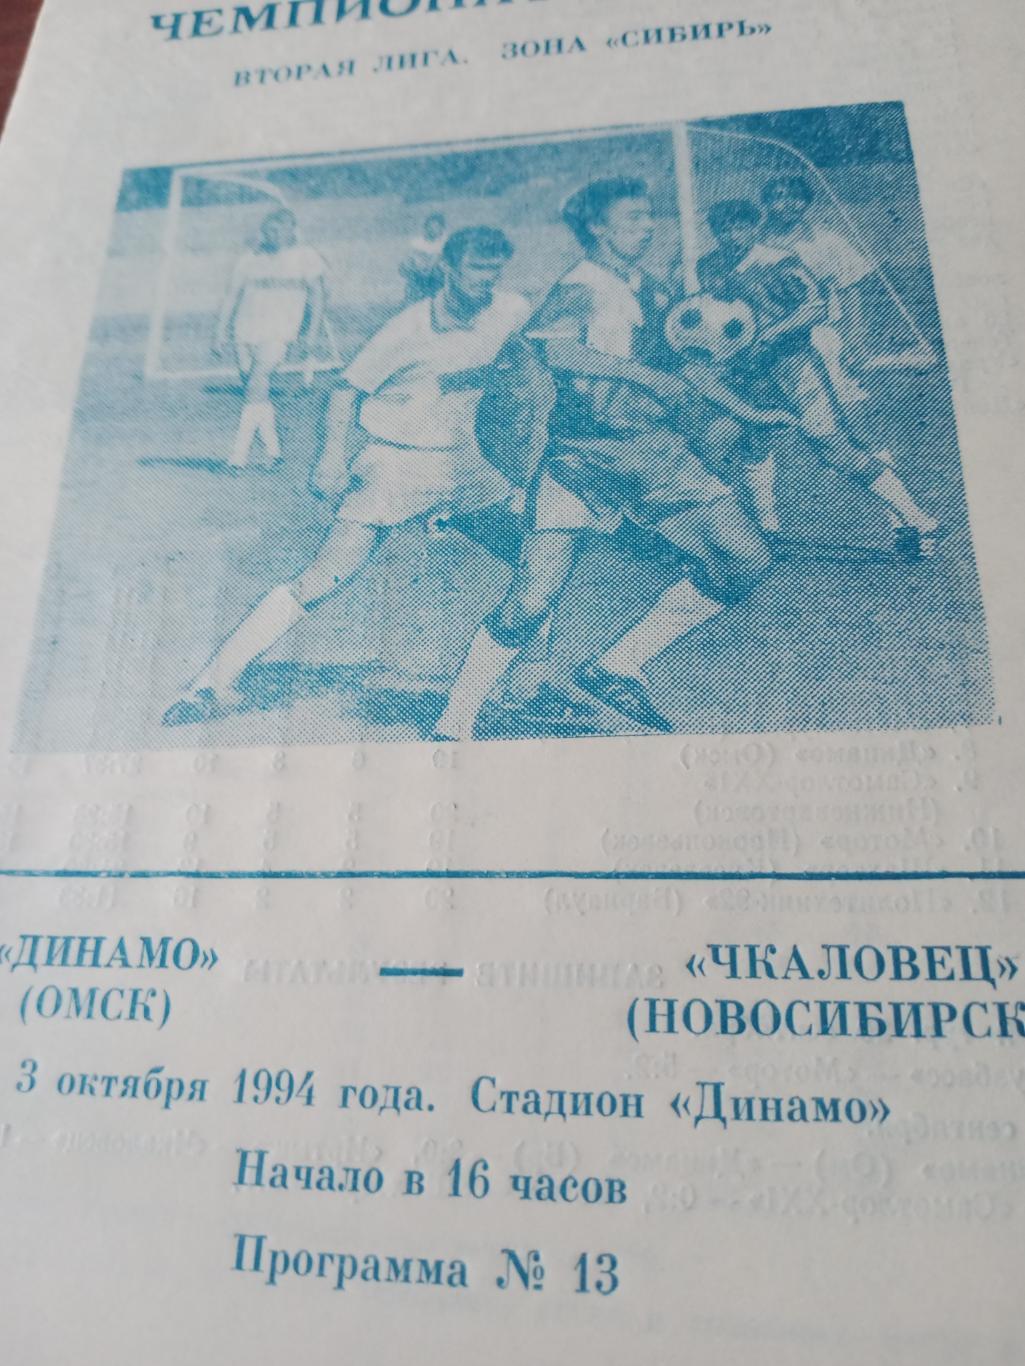 АКЦИЯ! Динамо Омск - Чкаловец Новосибирск. 3 октября 1994 год